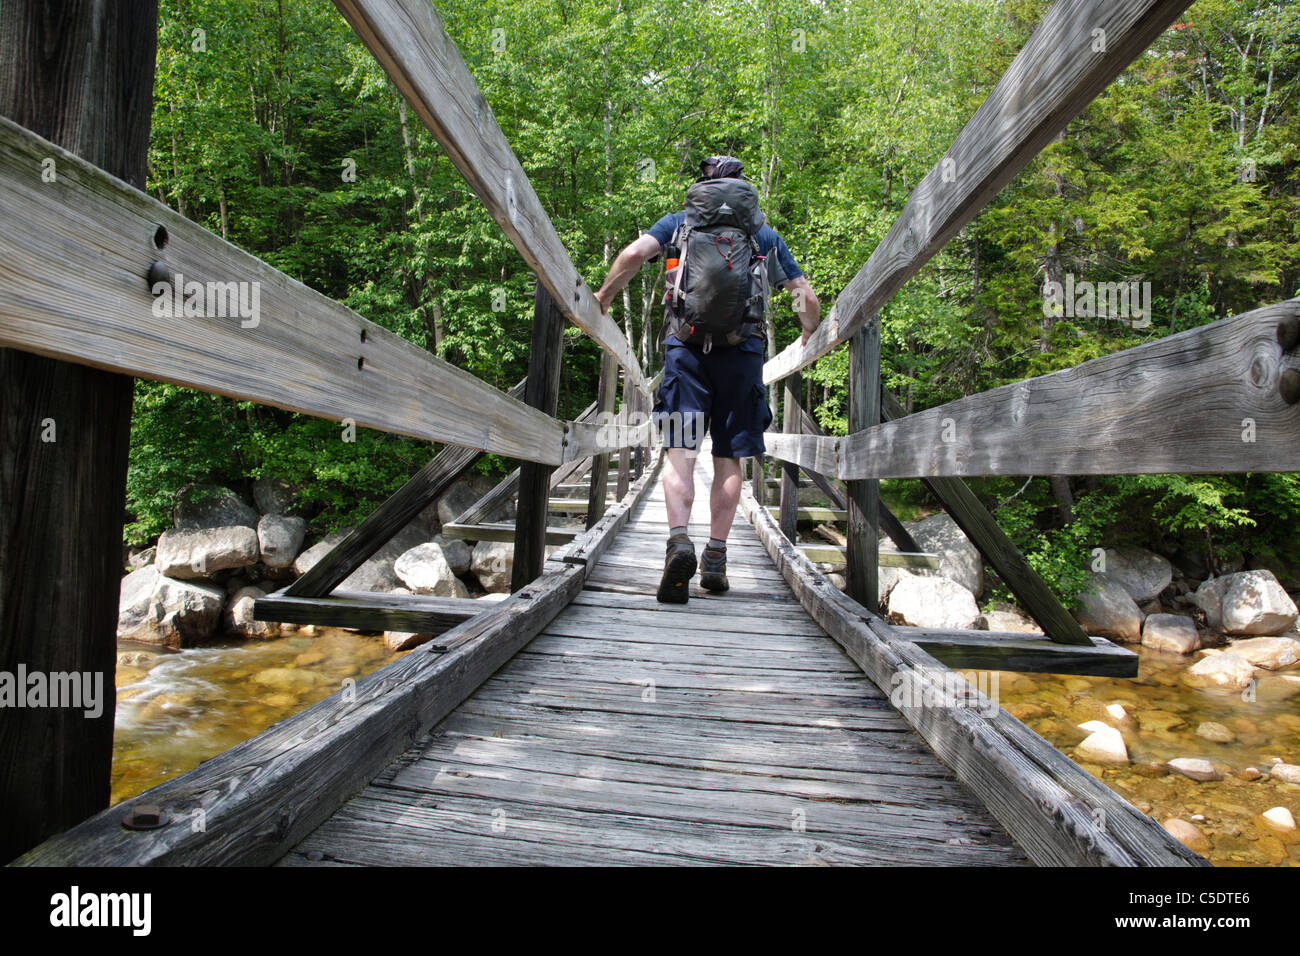 Pemigewasset deserto - un escursionista sulla passerella di legno che attraversa il ramo orientale del fiume Pemigewasset nel New Hampshire. Foto Stock